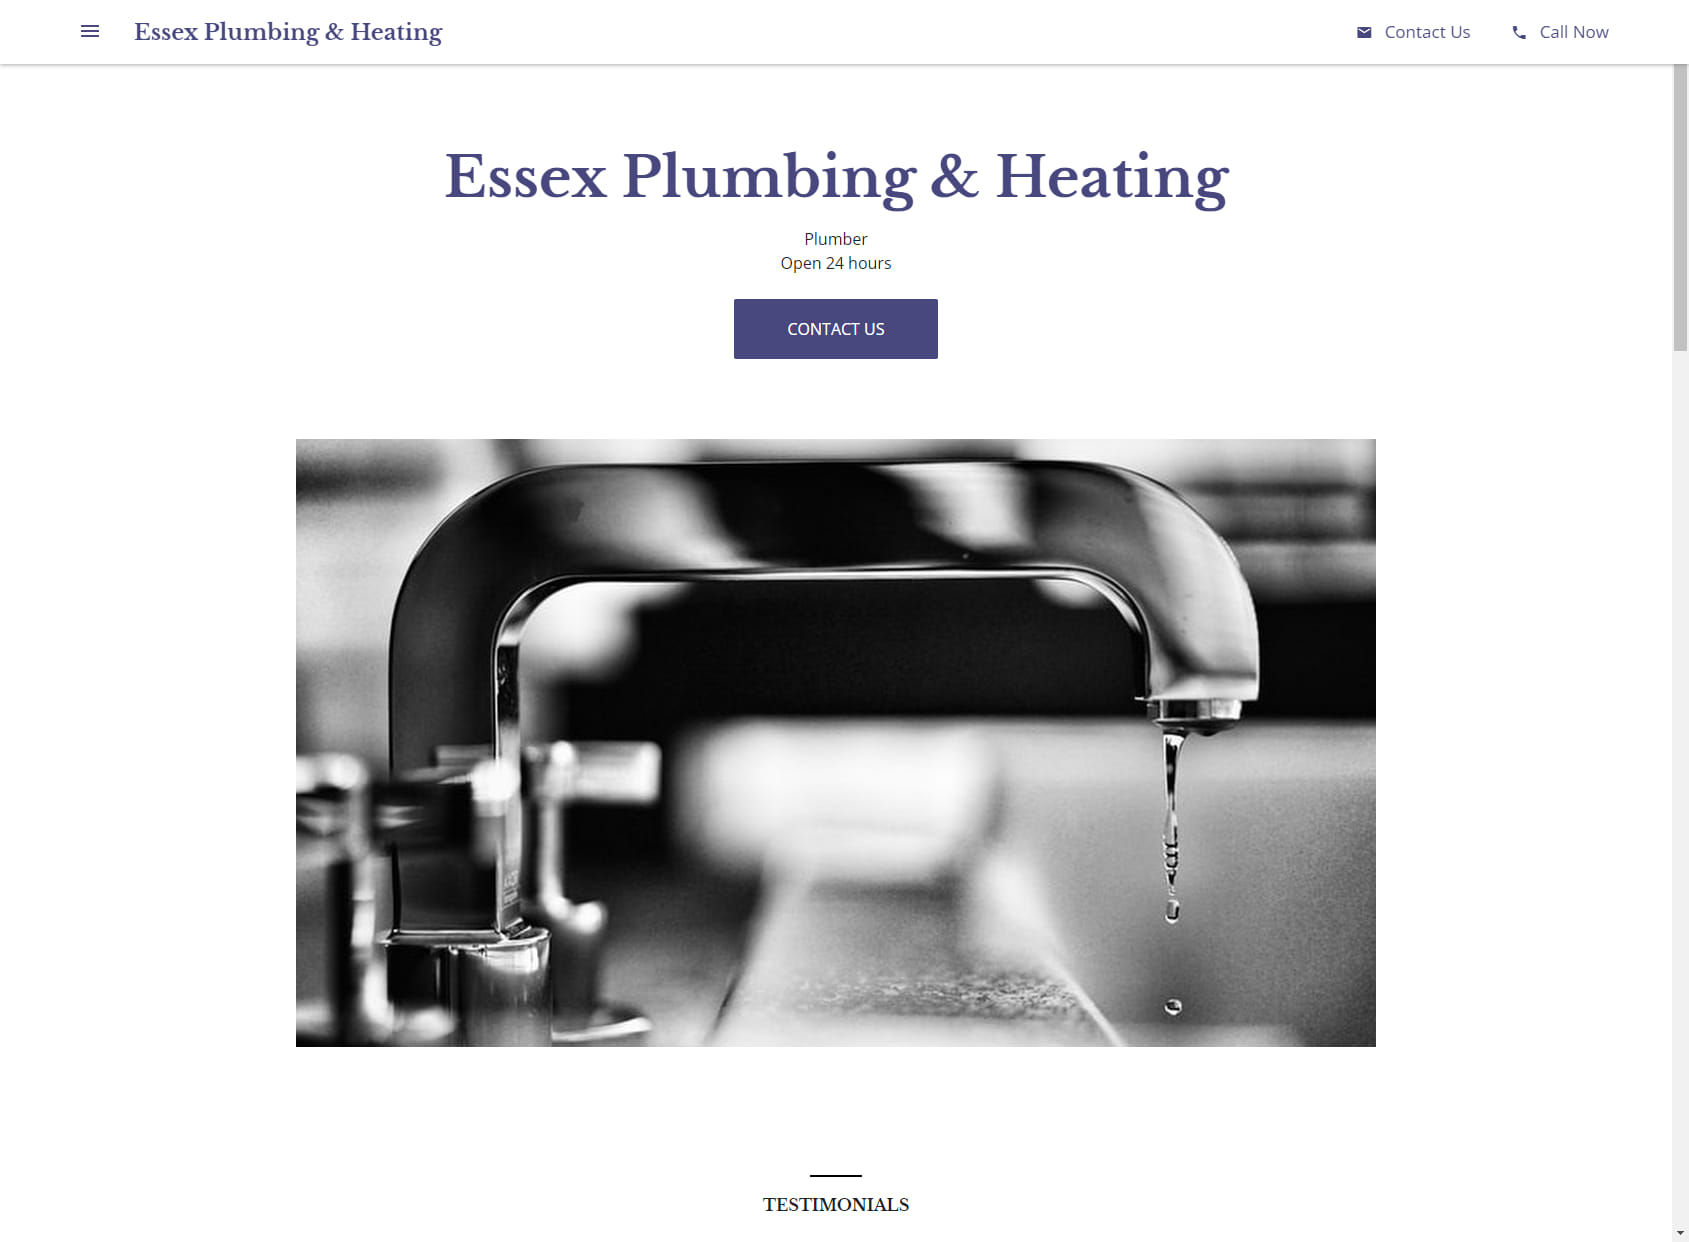 Essex Plumbing & Heating